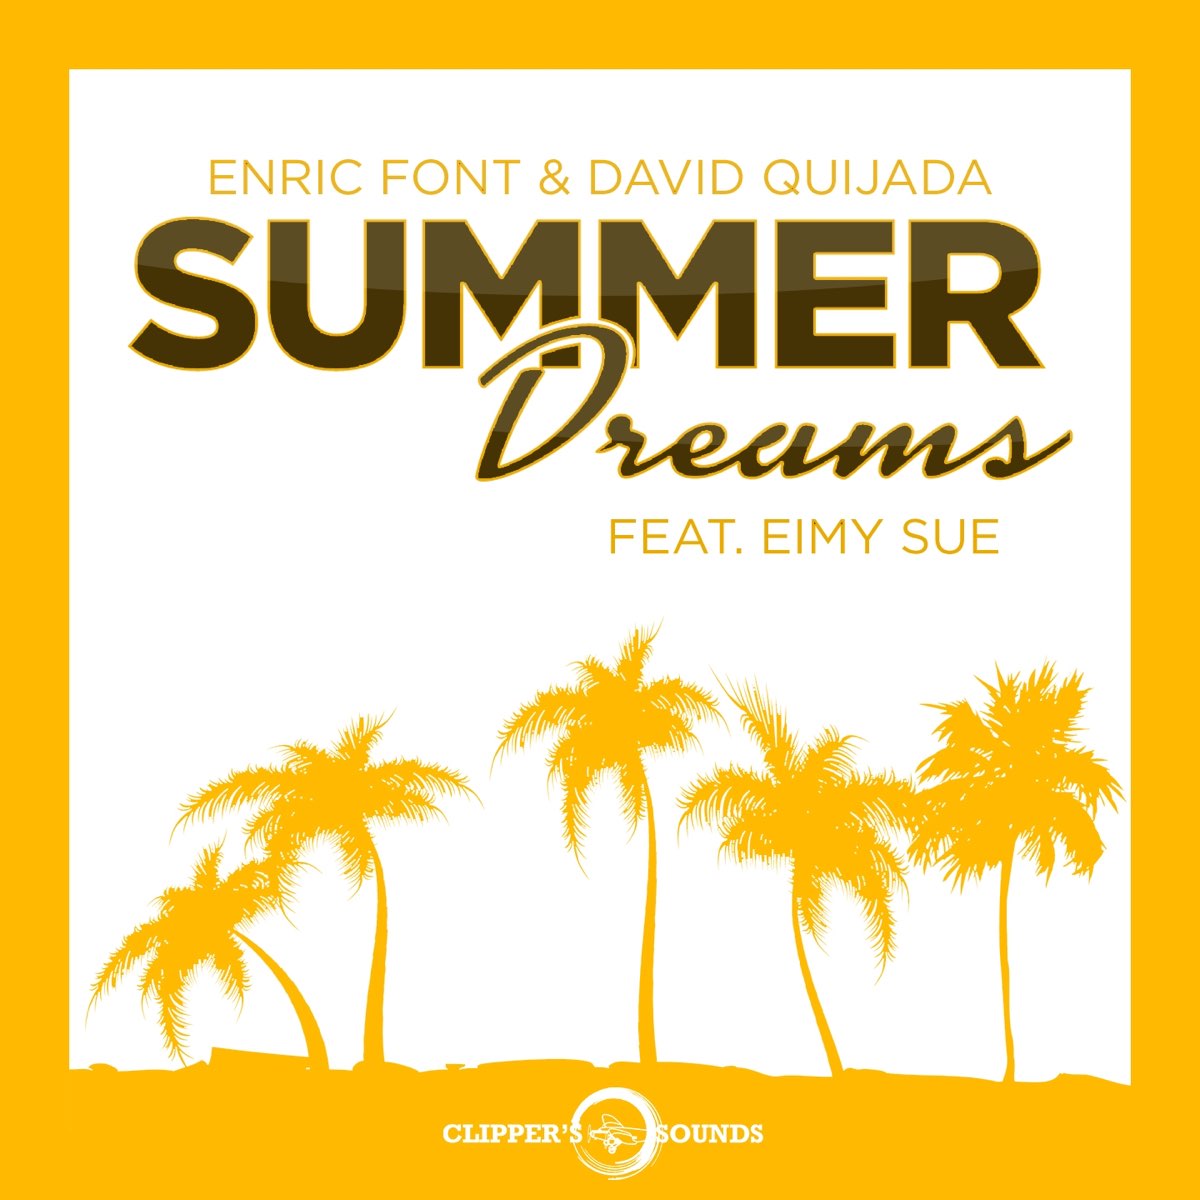 David шрифт. Саммер Сью. Summer Dream. Yuhniversia - Summer Dreams. Dreams feat lanie gardner extended david